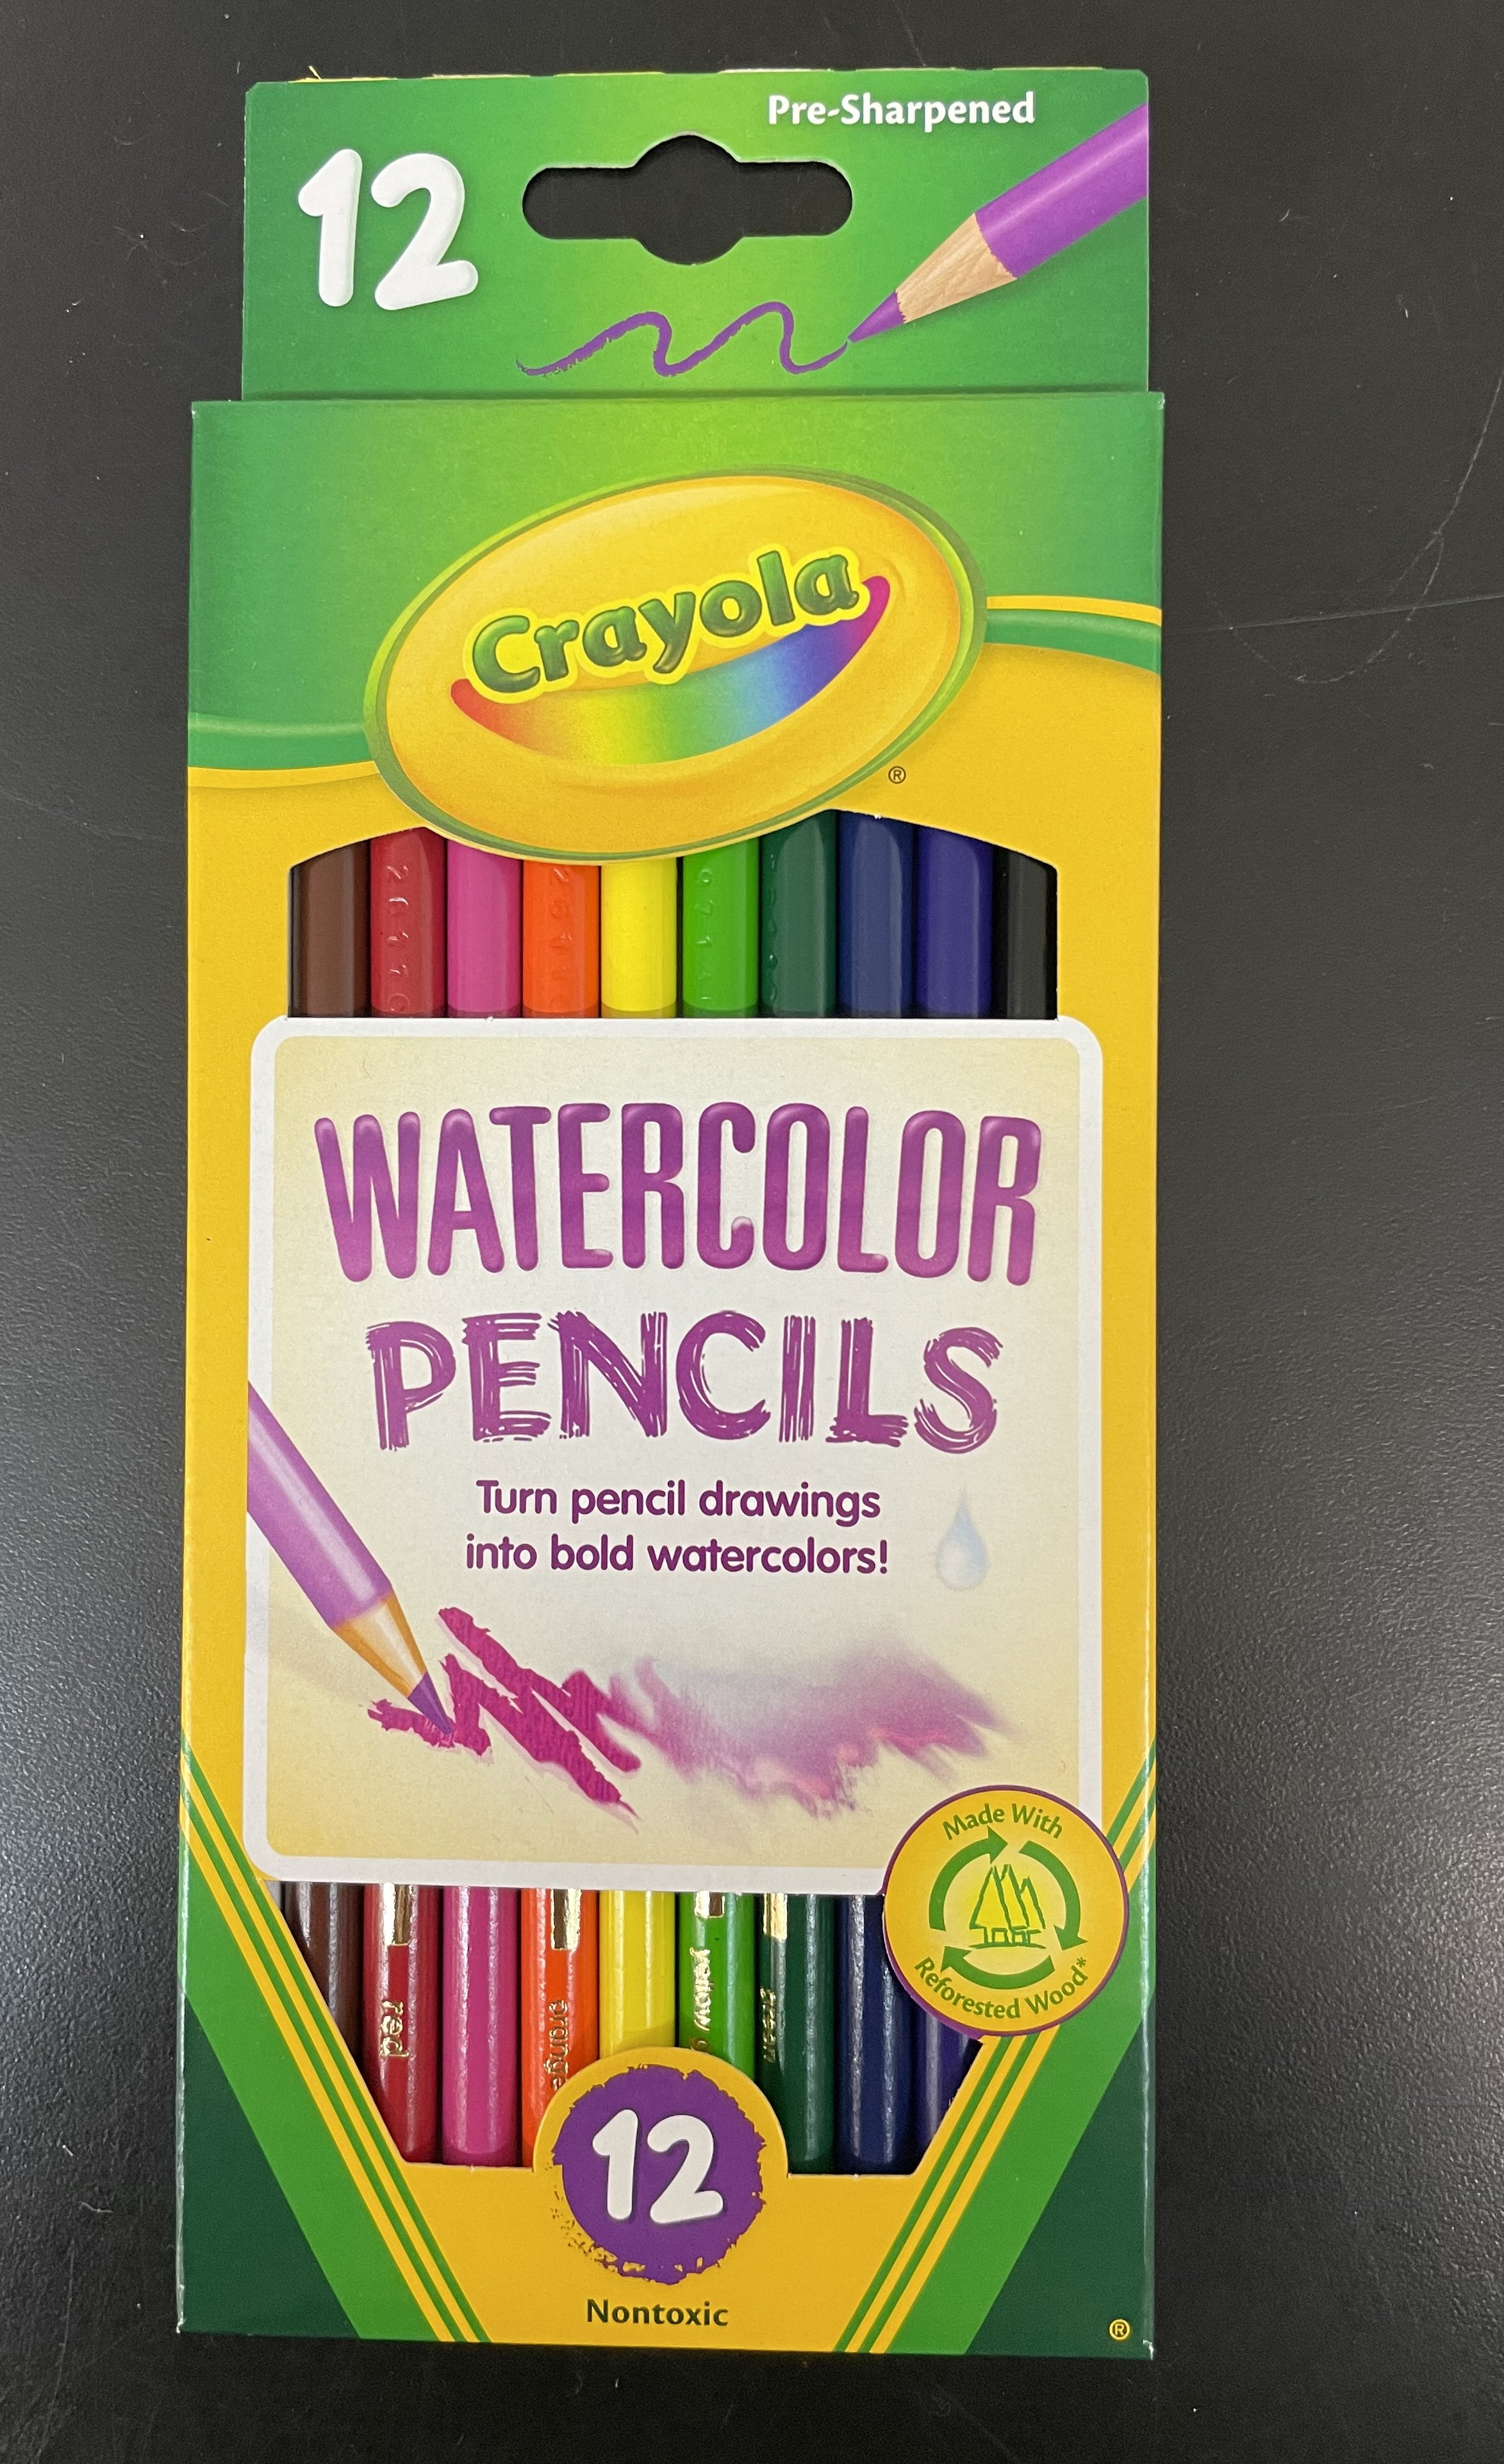 7. Watercolor Pencils